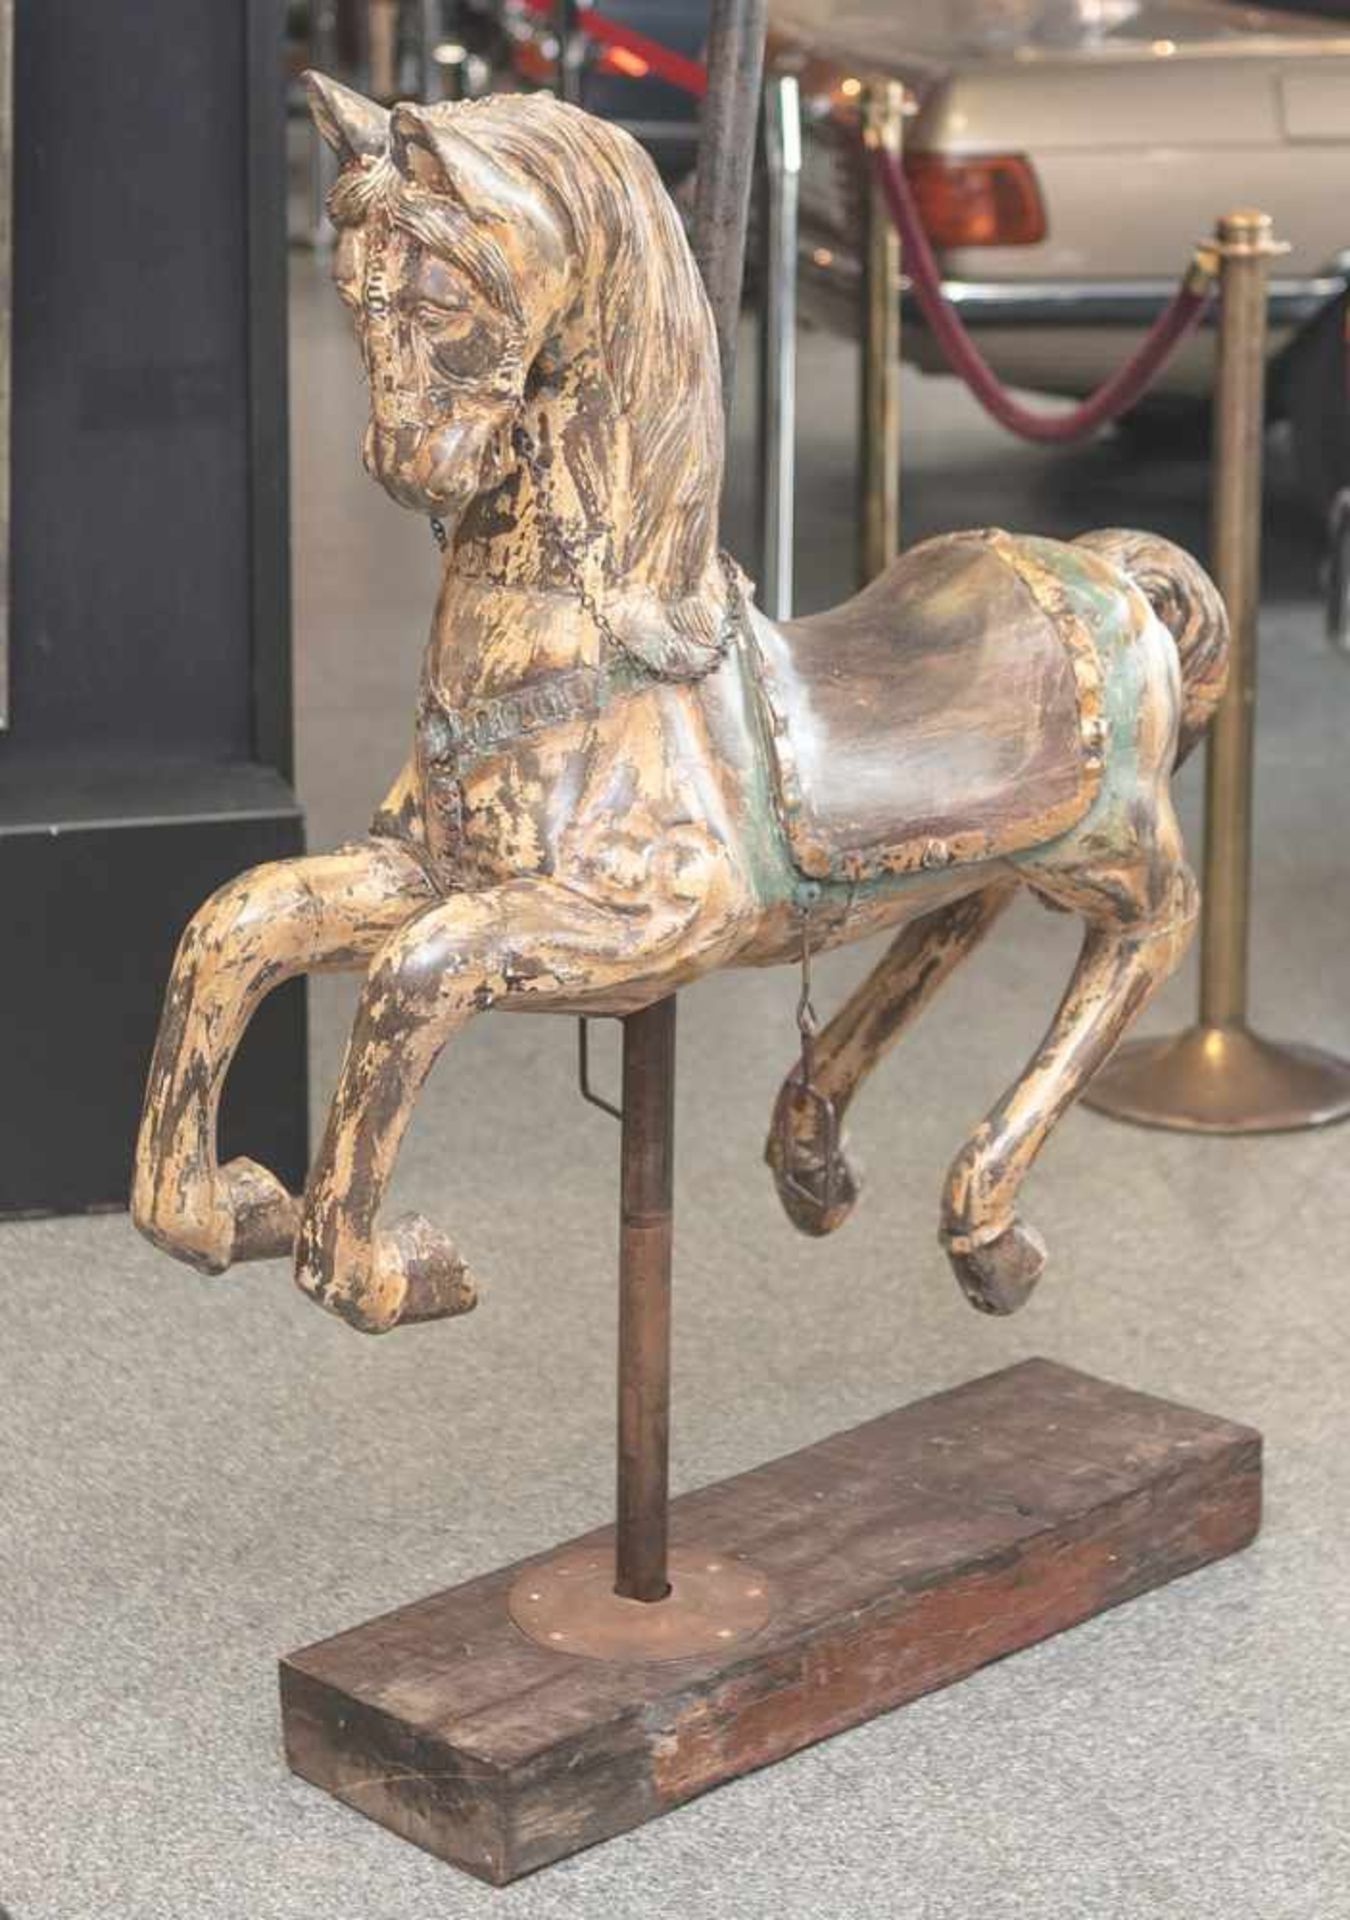 Karusselpferd, 20. Jahrhundert, Holz, geschnitzt, mit den Resten einer farbigen Fassung.Steigbügel